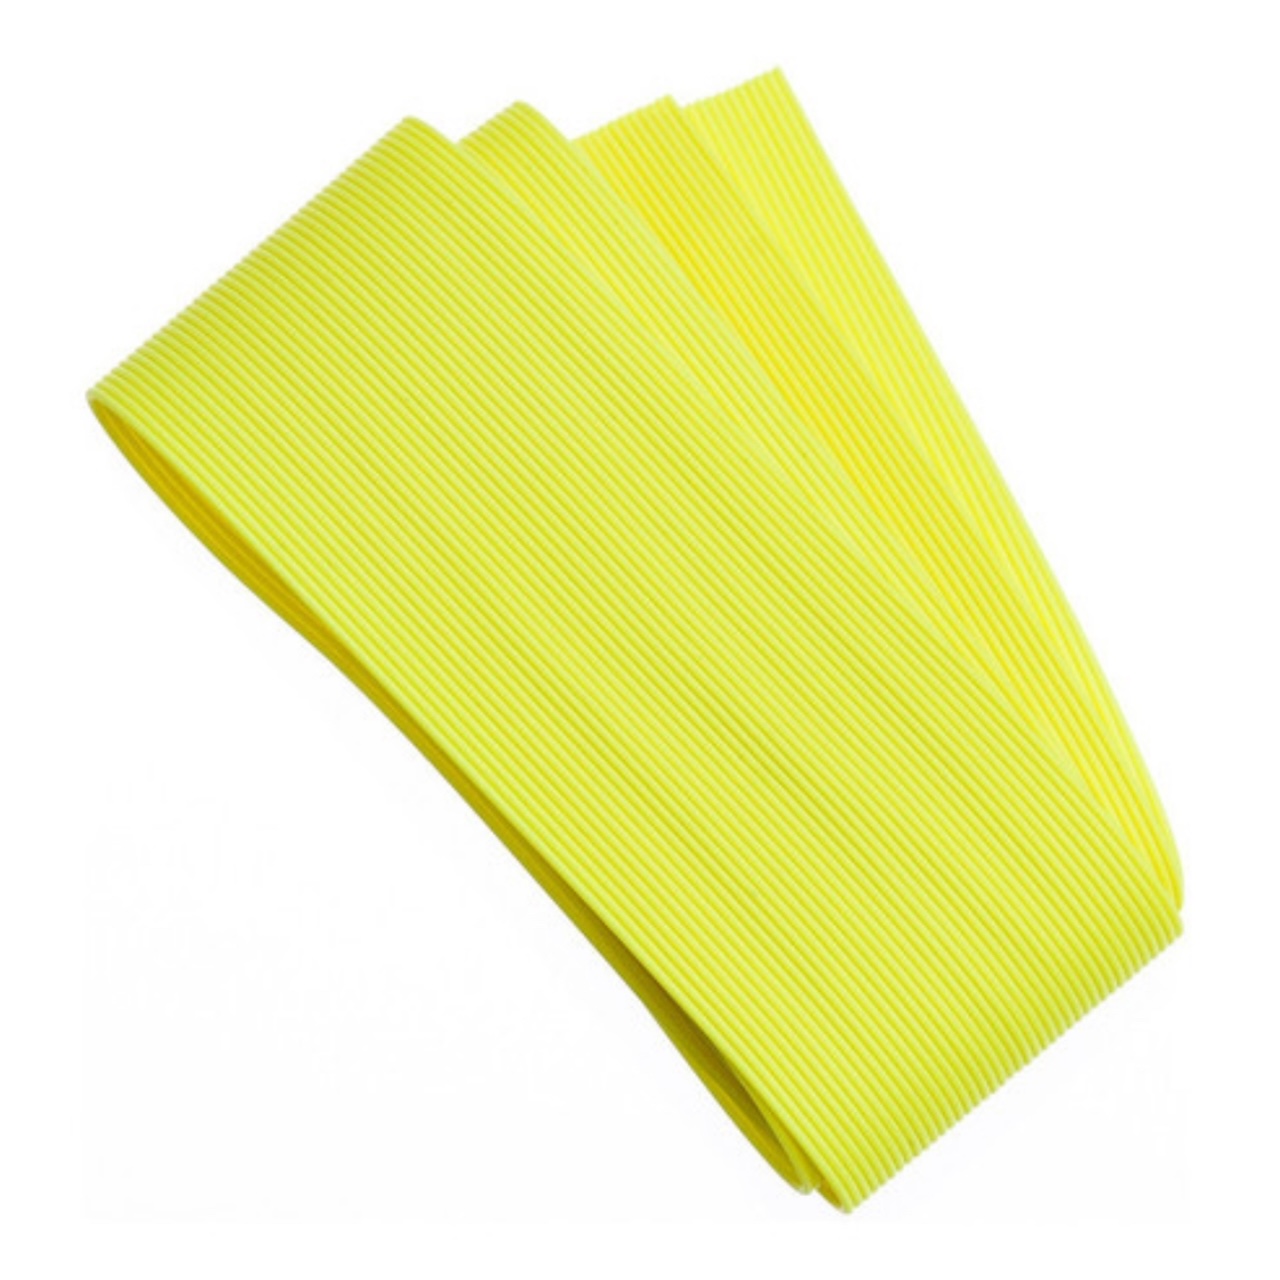 Wapsi Round Rubber - Medium - Fl. Yellow